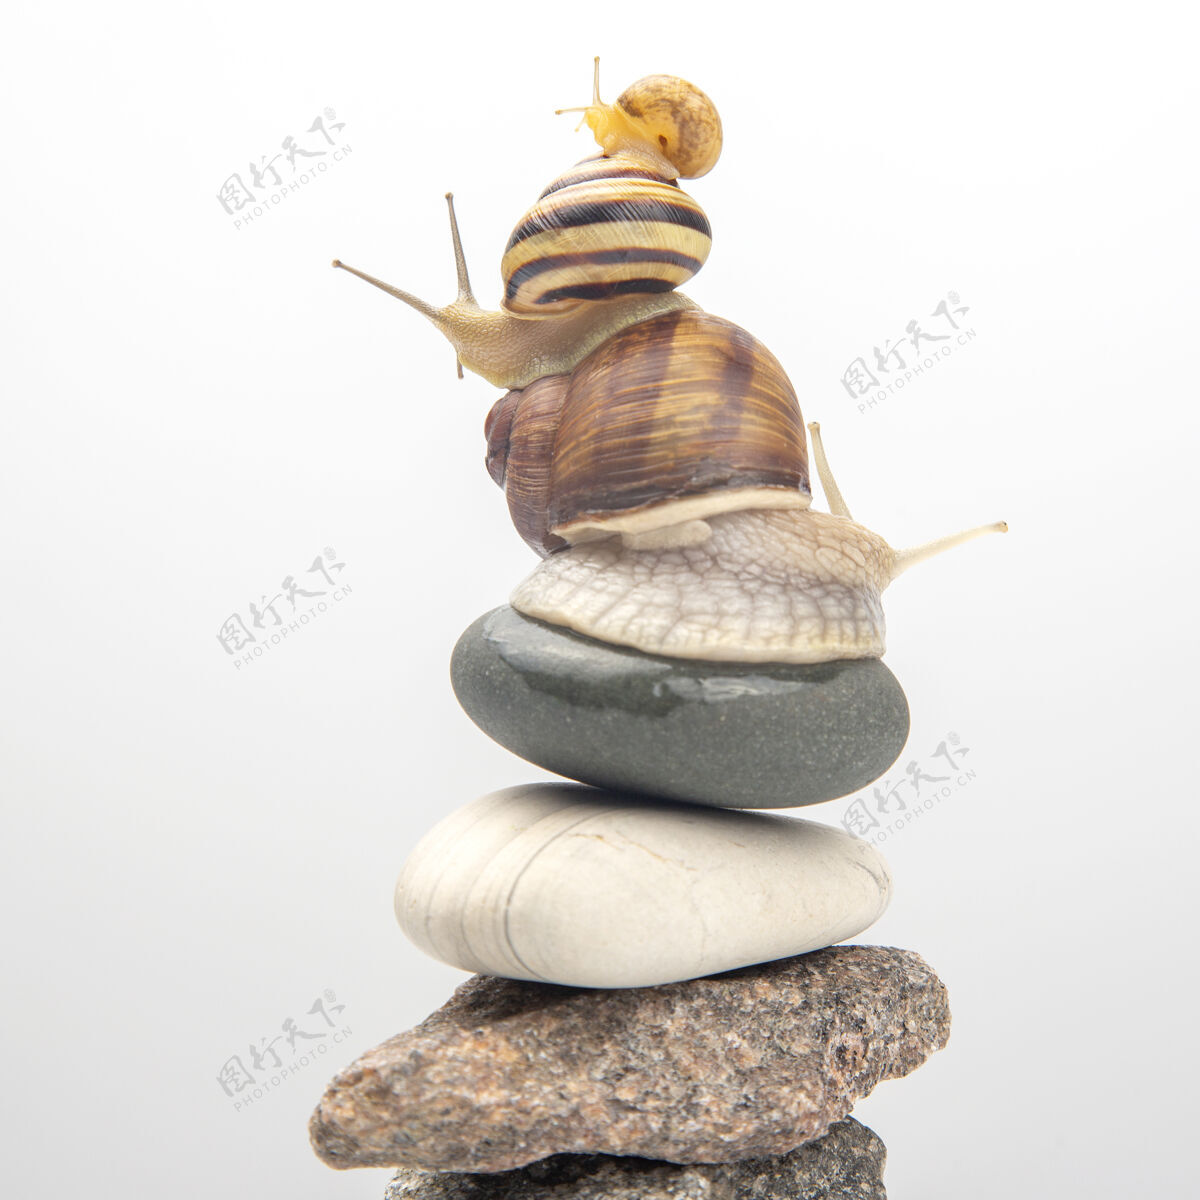 花园蜗牛互相顶在石头上保持平衡美味佳肴肉和美食触角自然动物